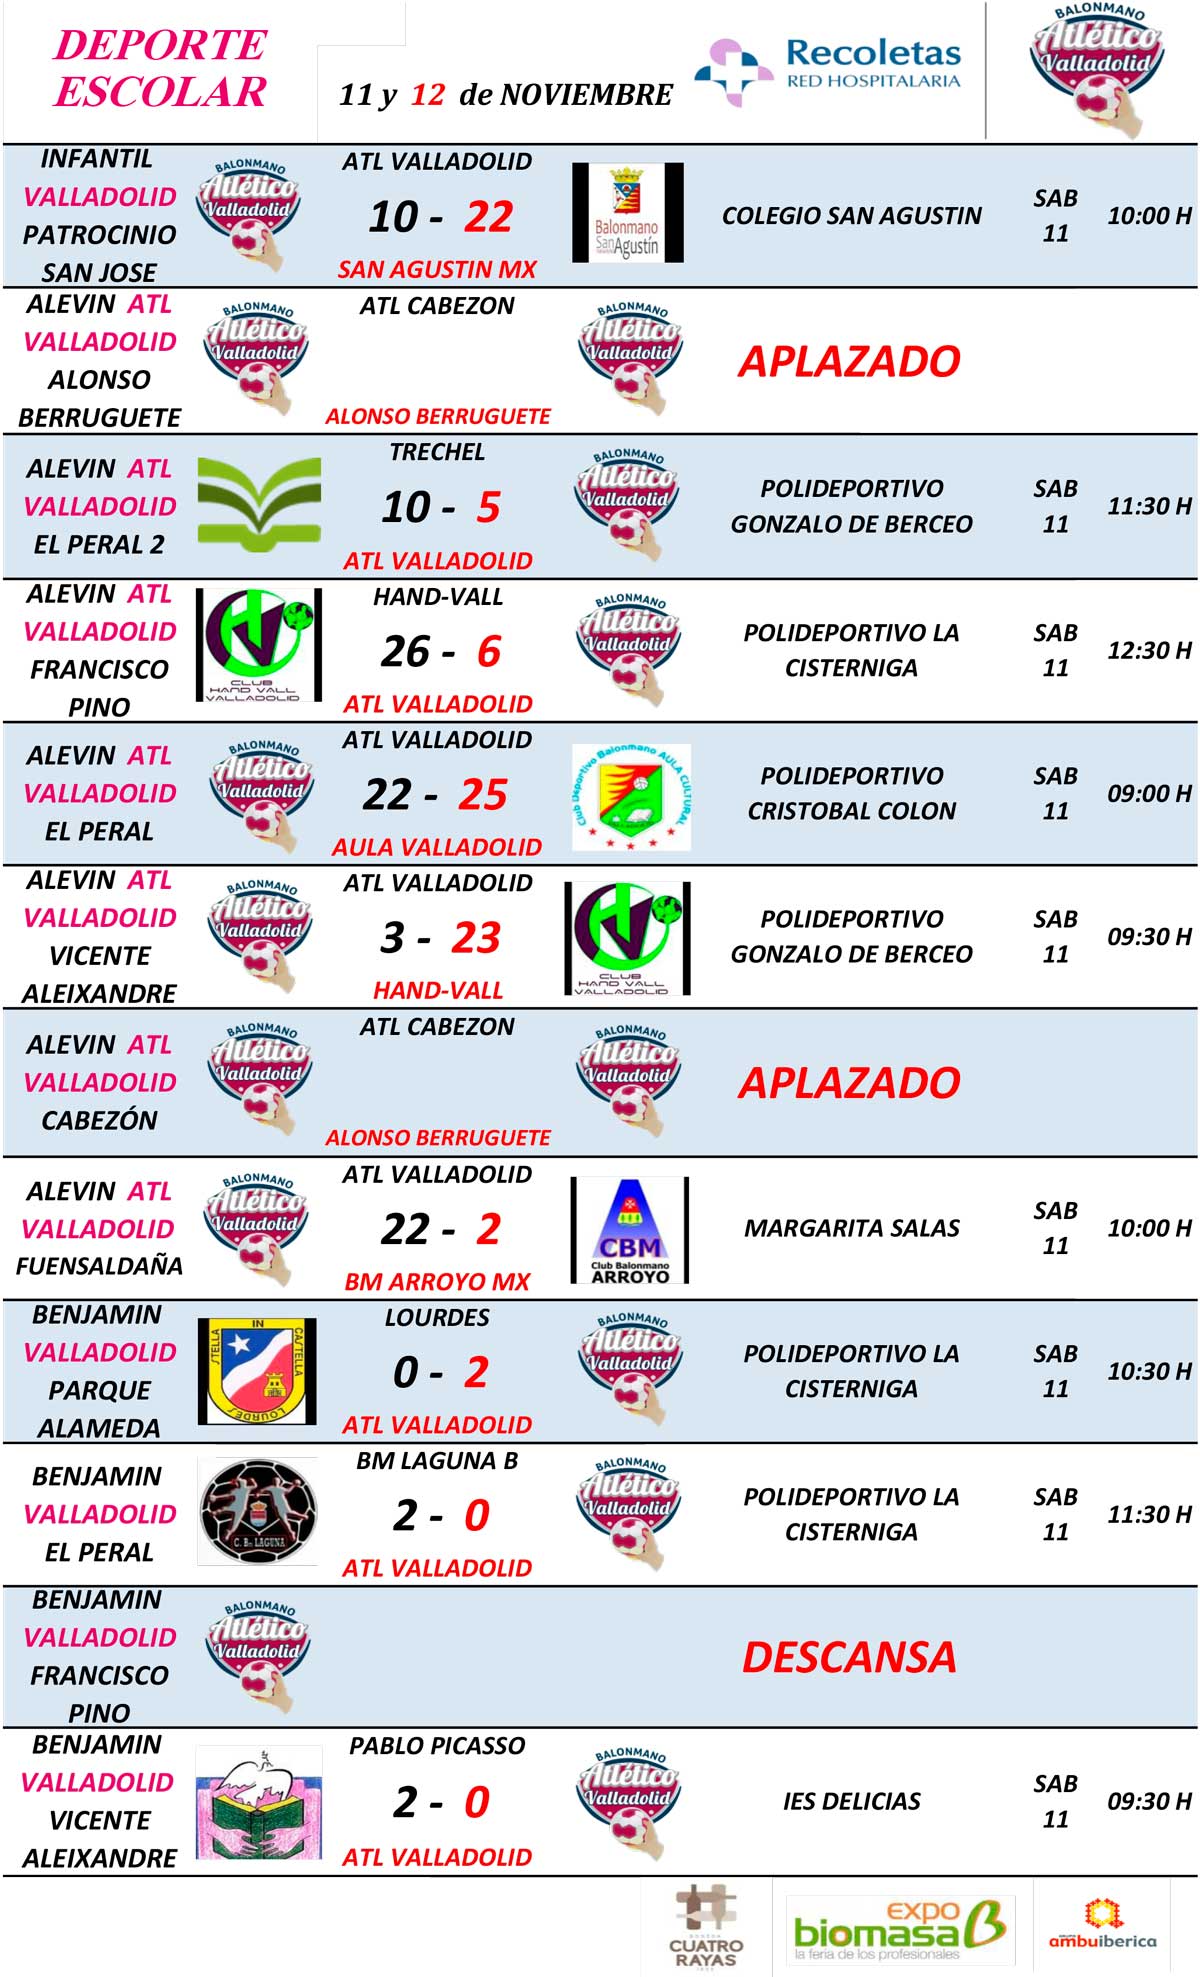 Resultados de cantera del Recoletas Atlético Valladolid (jornada 11 y 12 noviembre) | Galería 1 / 2